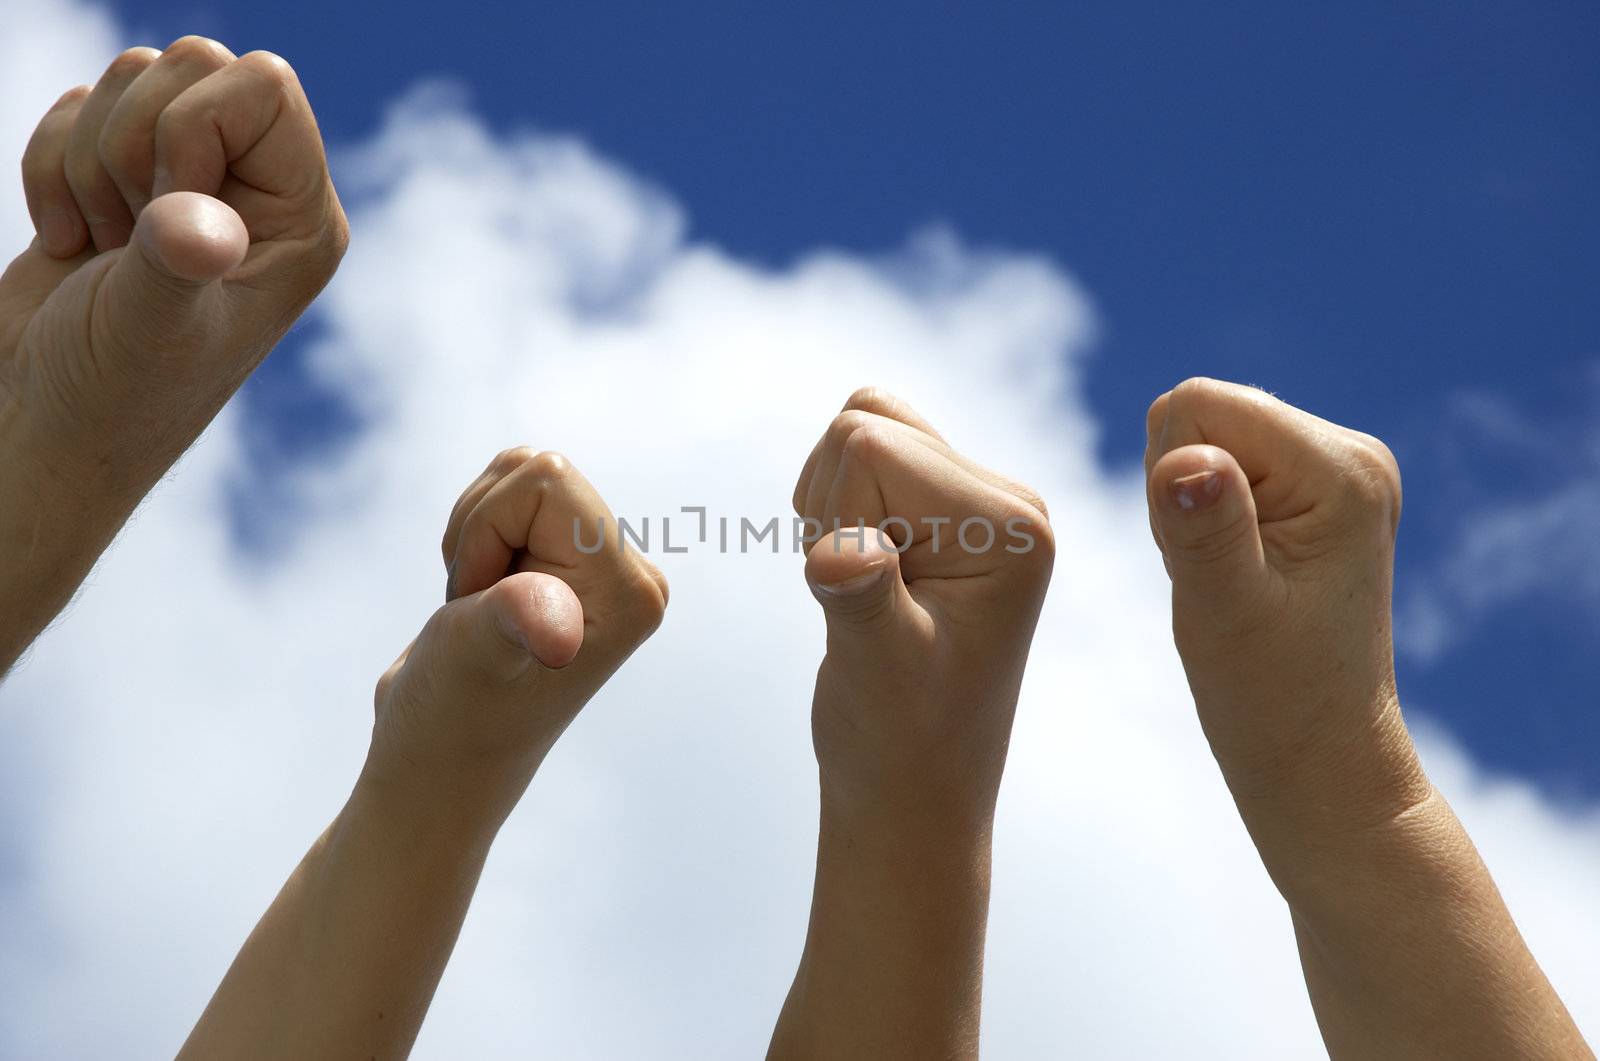 hands in the sky showing displeasure